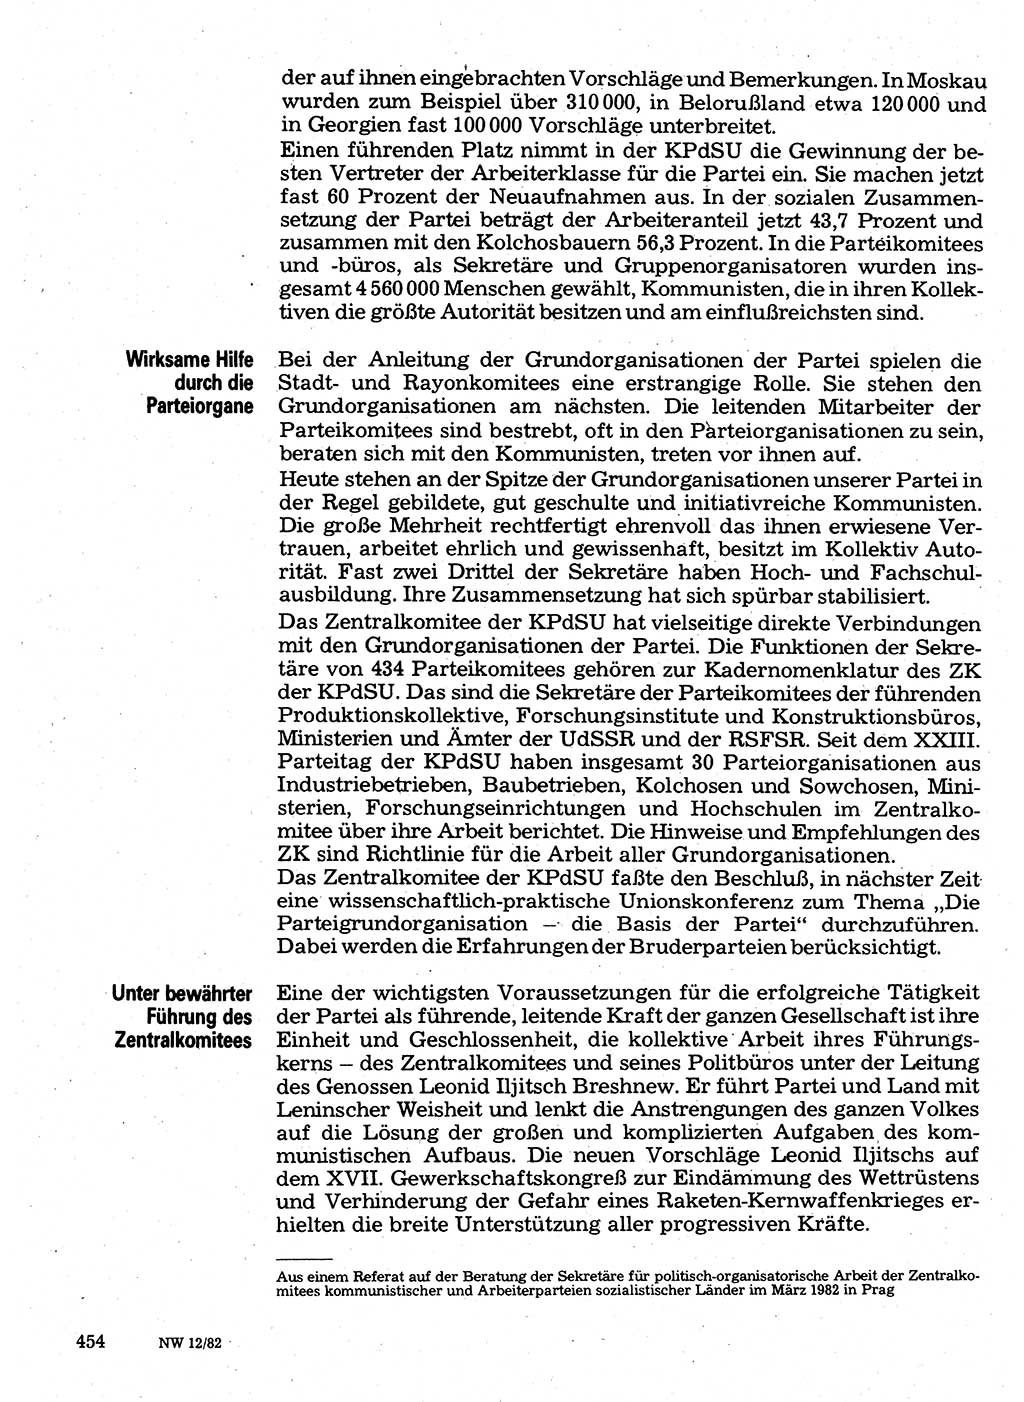 Neuer Weg (NW), Organ des Zentralkomitees (ZK) der SED (Sozialistische Einheitspartei Deutschlands) für Fragen des Parteilebens, 37. Jahrgang [Deutsche Demokratische Republik (DDR)] 1982, Seite 454 (NW ZK SED DDR 1982, S. 454)